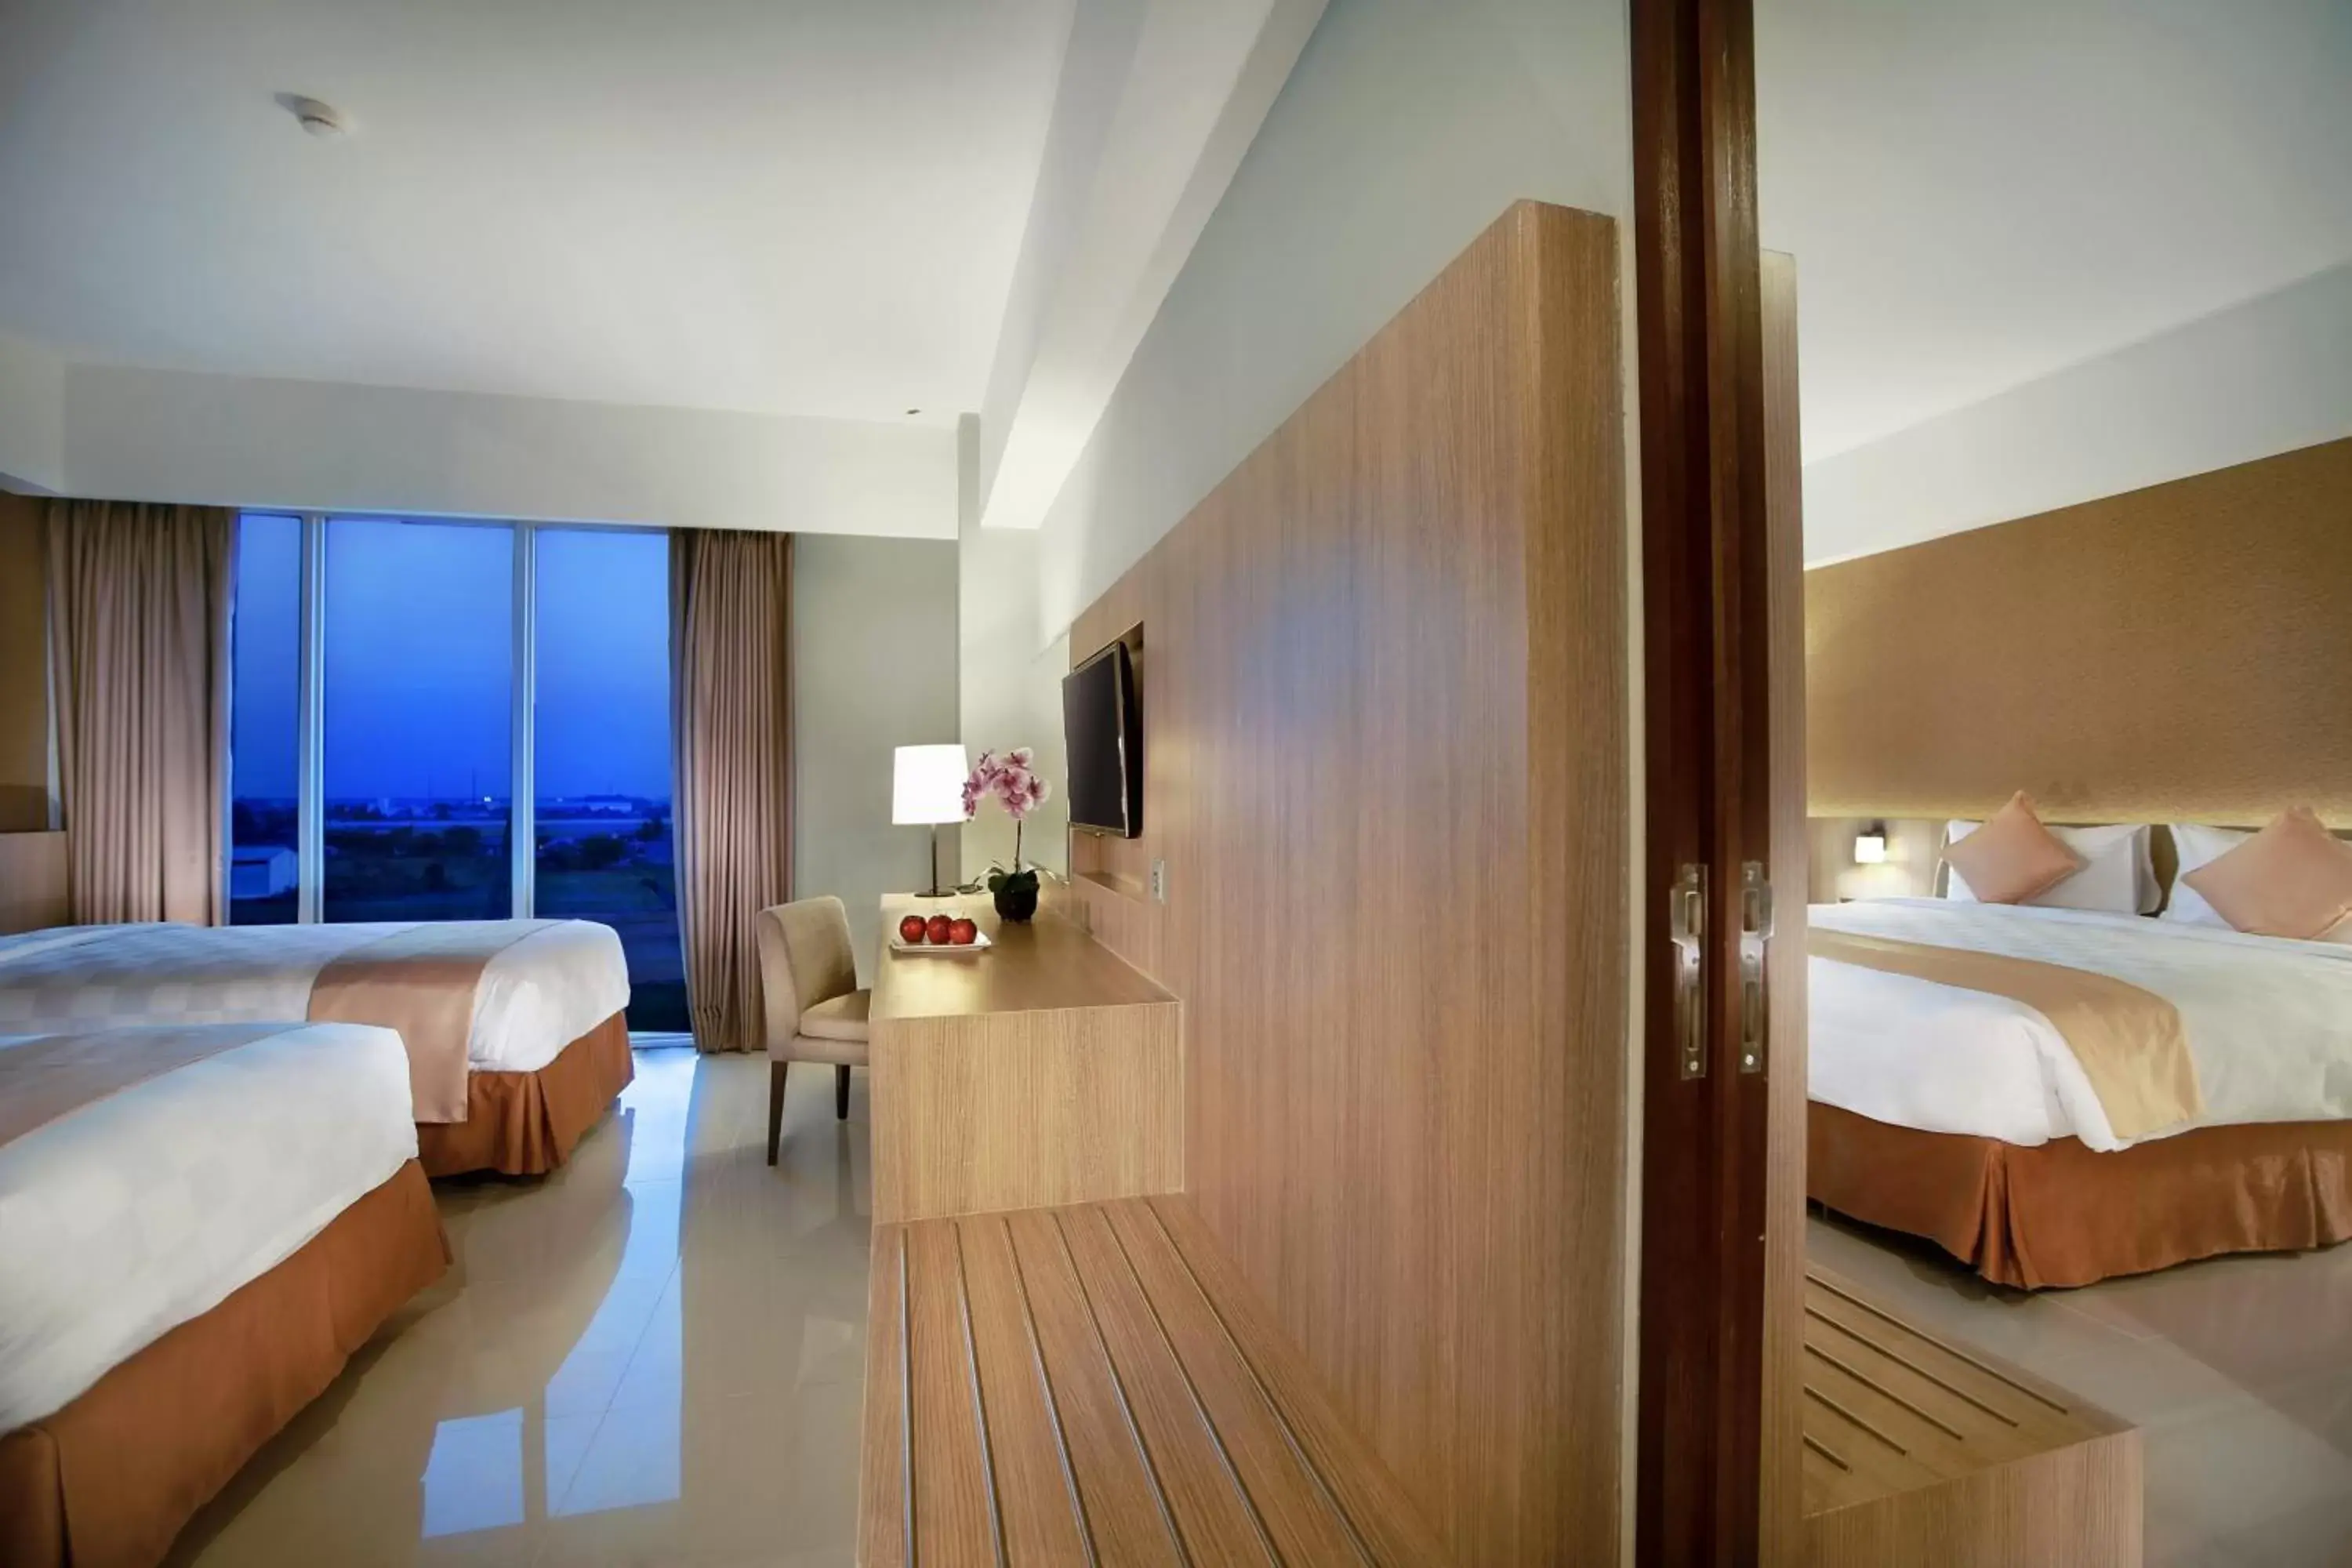 Bedroom, Bathroom in ASTON Banua Banjarmasin Hotel & Convention Center